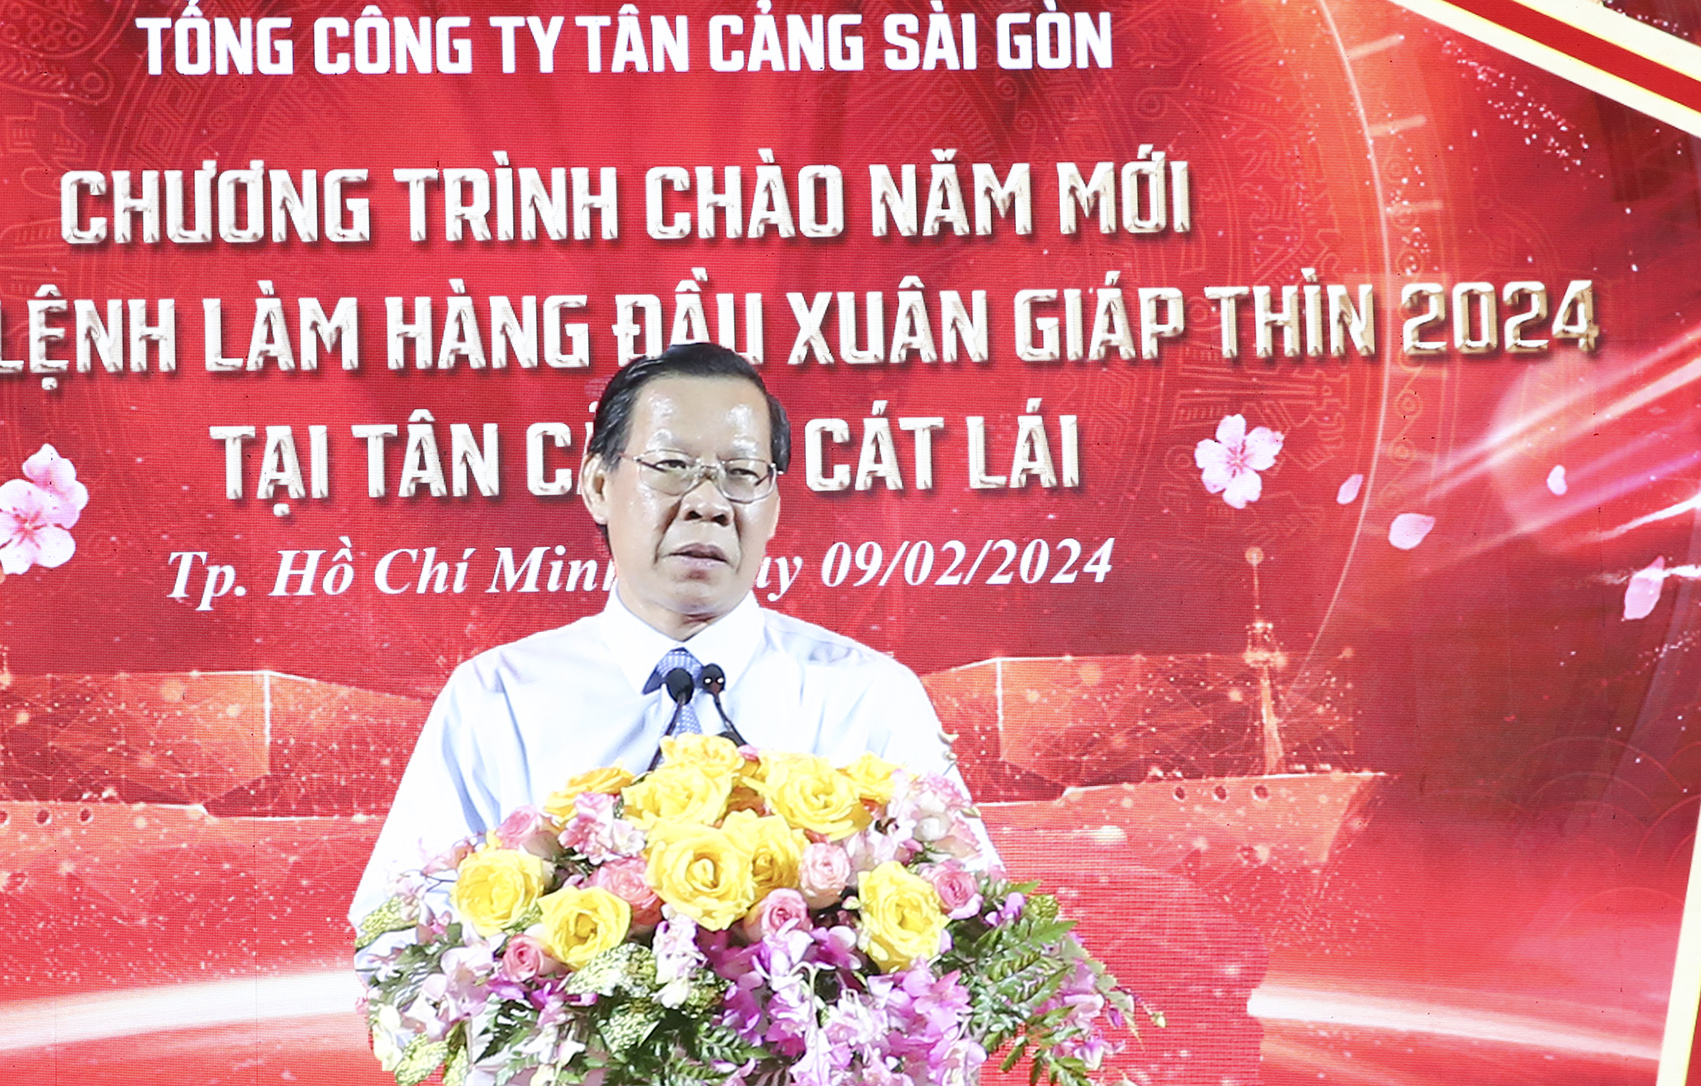 Tổng công ty Tân Cảng Sài Gòn phát lệnh làm hàng đầu xuân Giáp Thìn 2024- Ảnh 4.